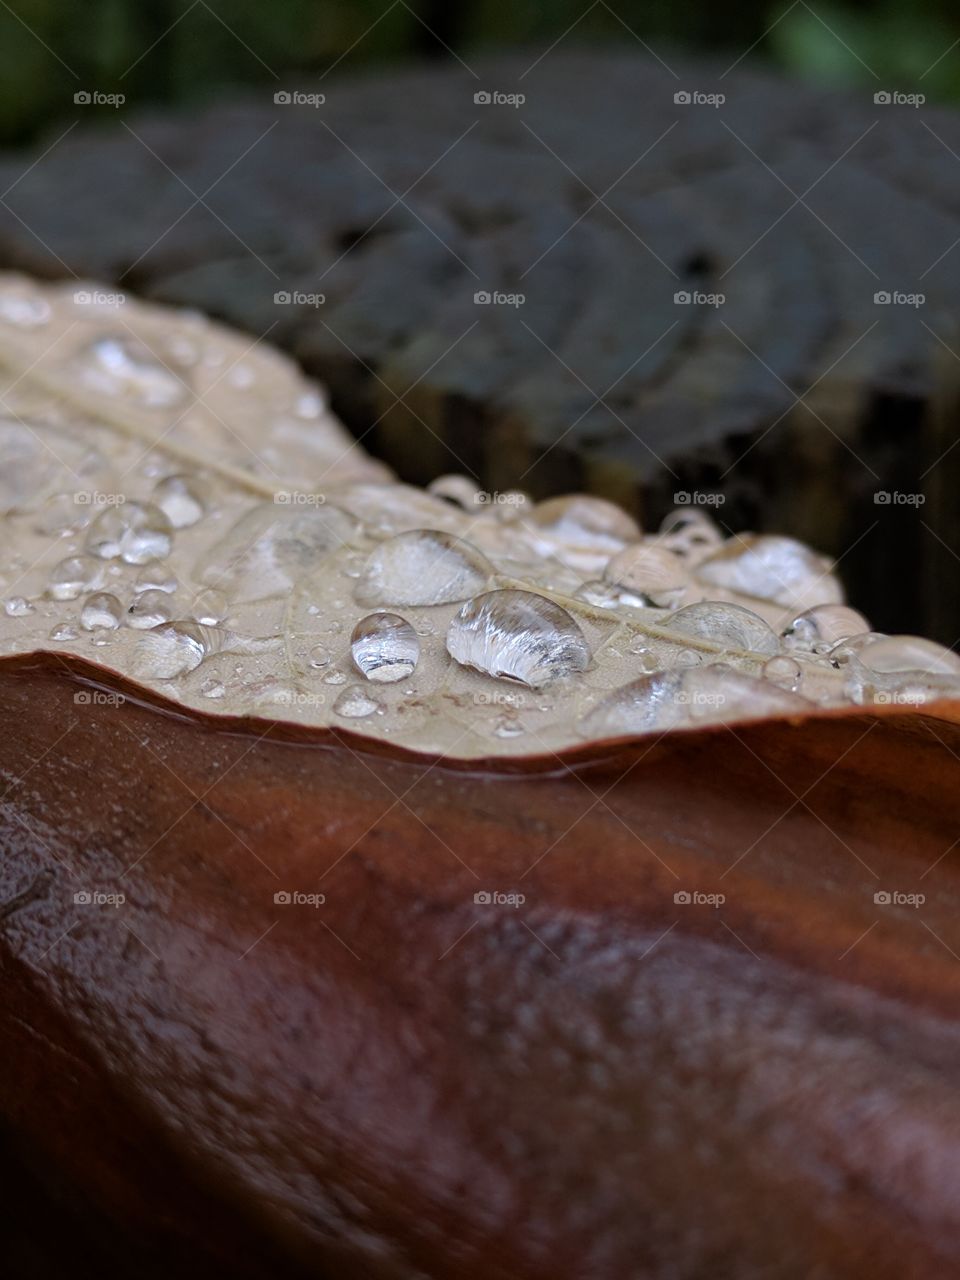 Water droplets on Leaf on banister.